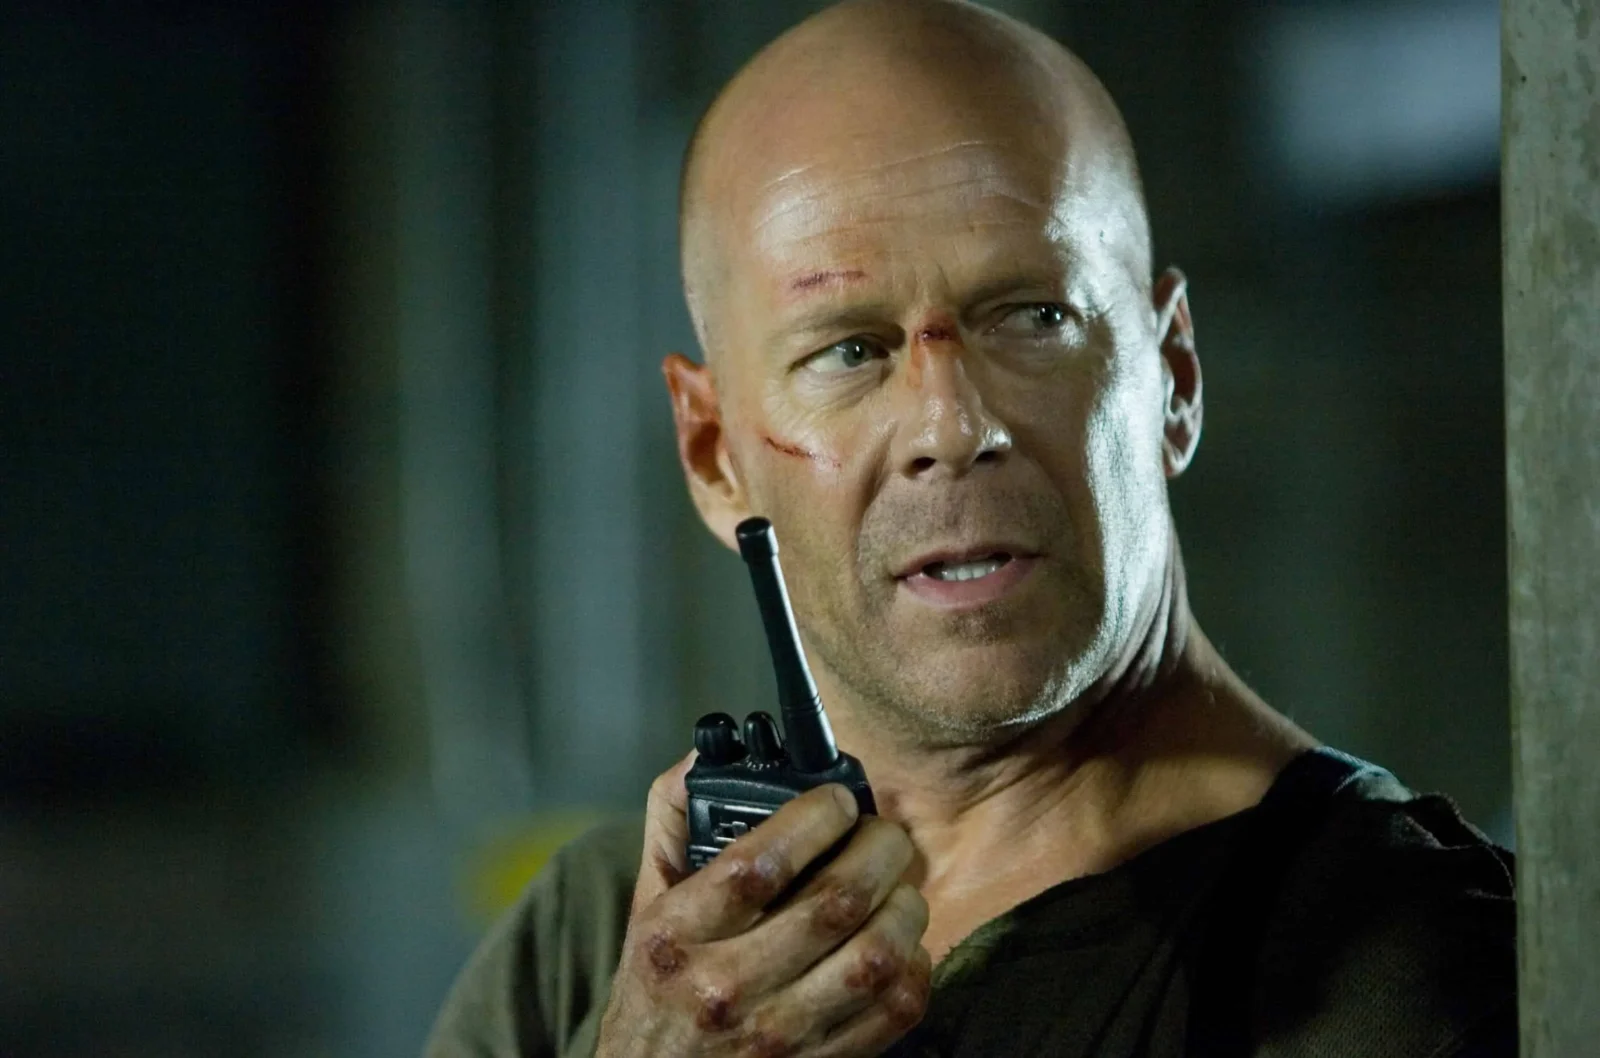 Cattive notizie dallo stato di salute di Bruce Willis: l'attore soffre di demenza frontotemporale